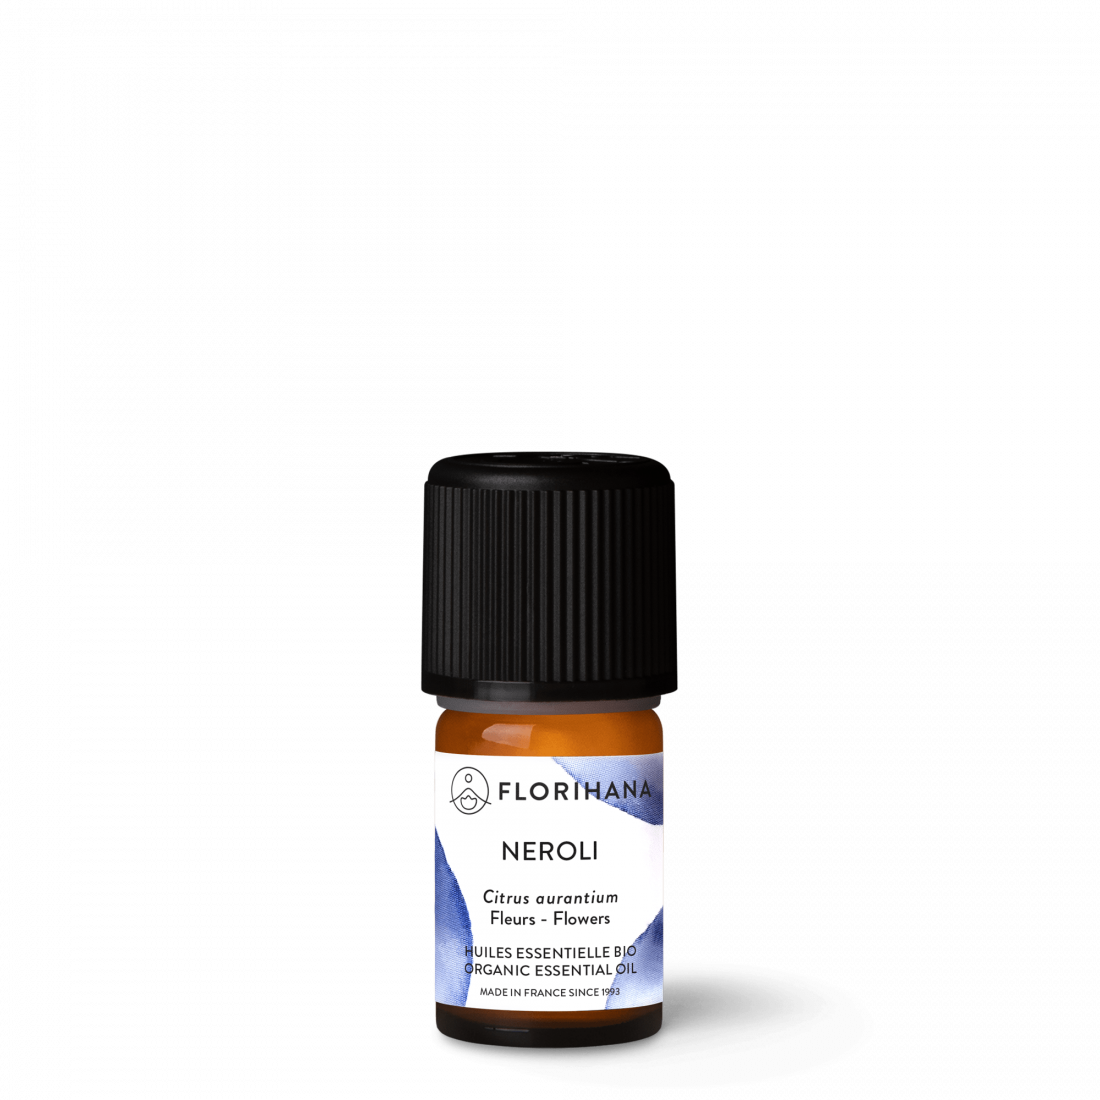 Neroli Essential oil- 100% Pure Neroli oil- Natural Orange blossoms